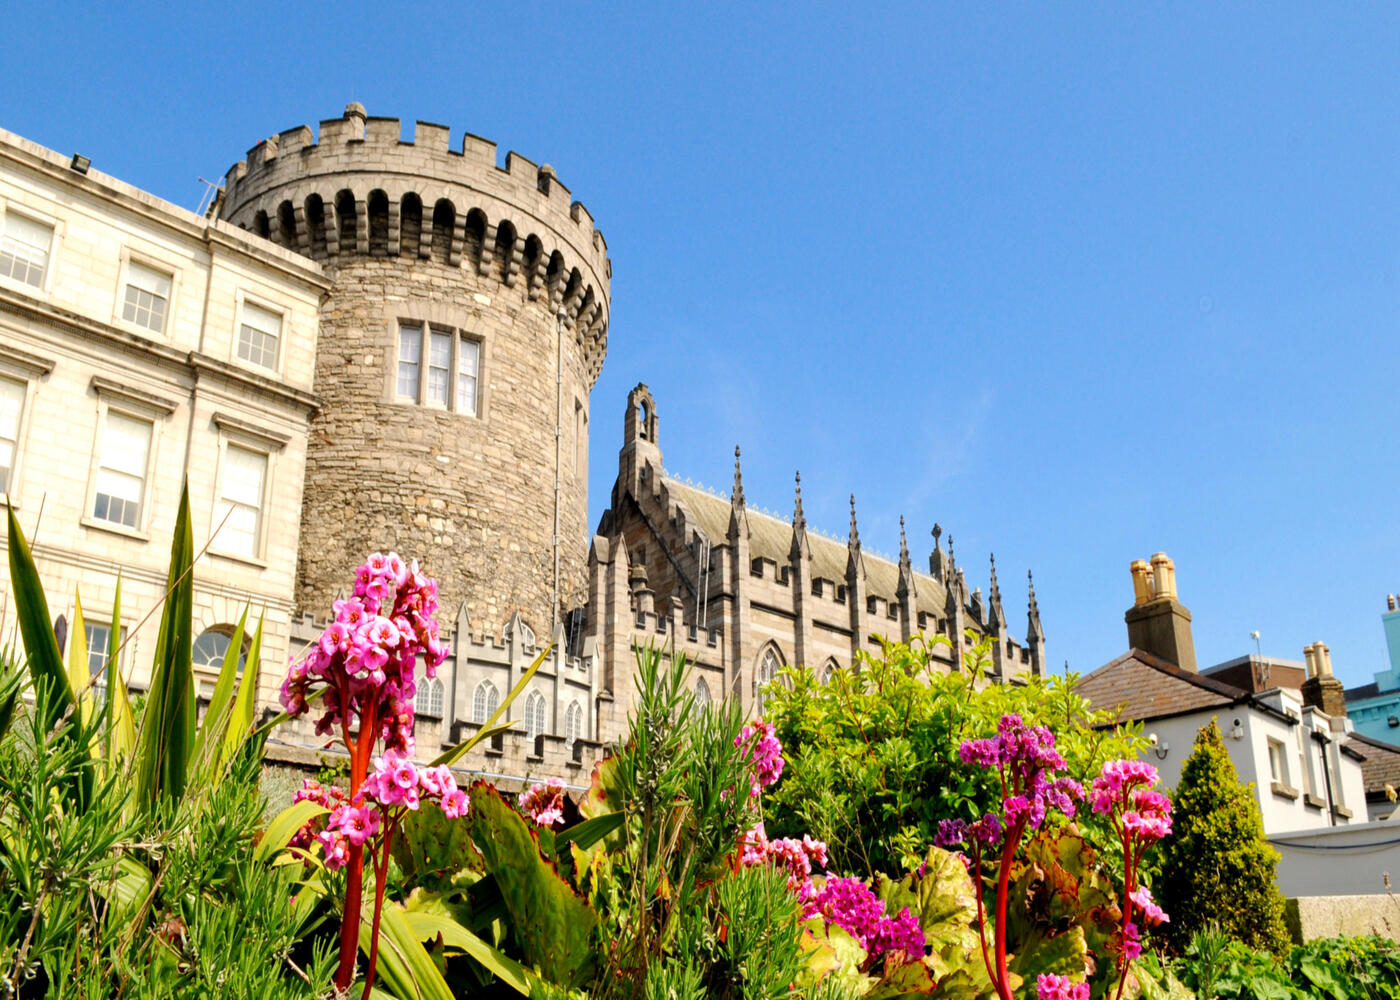 Castelo de Dublin